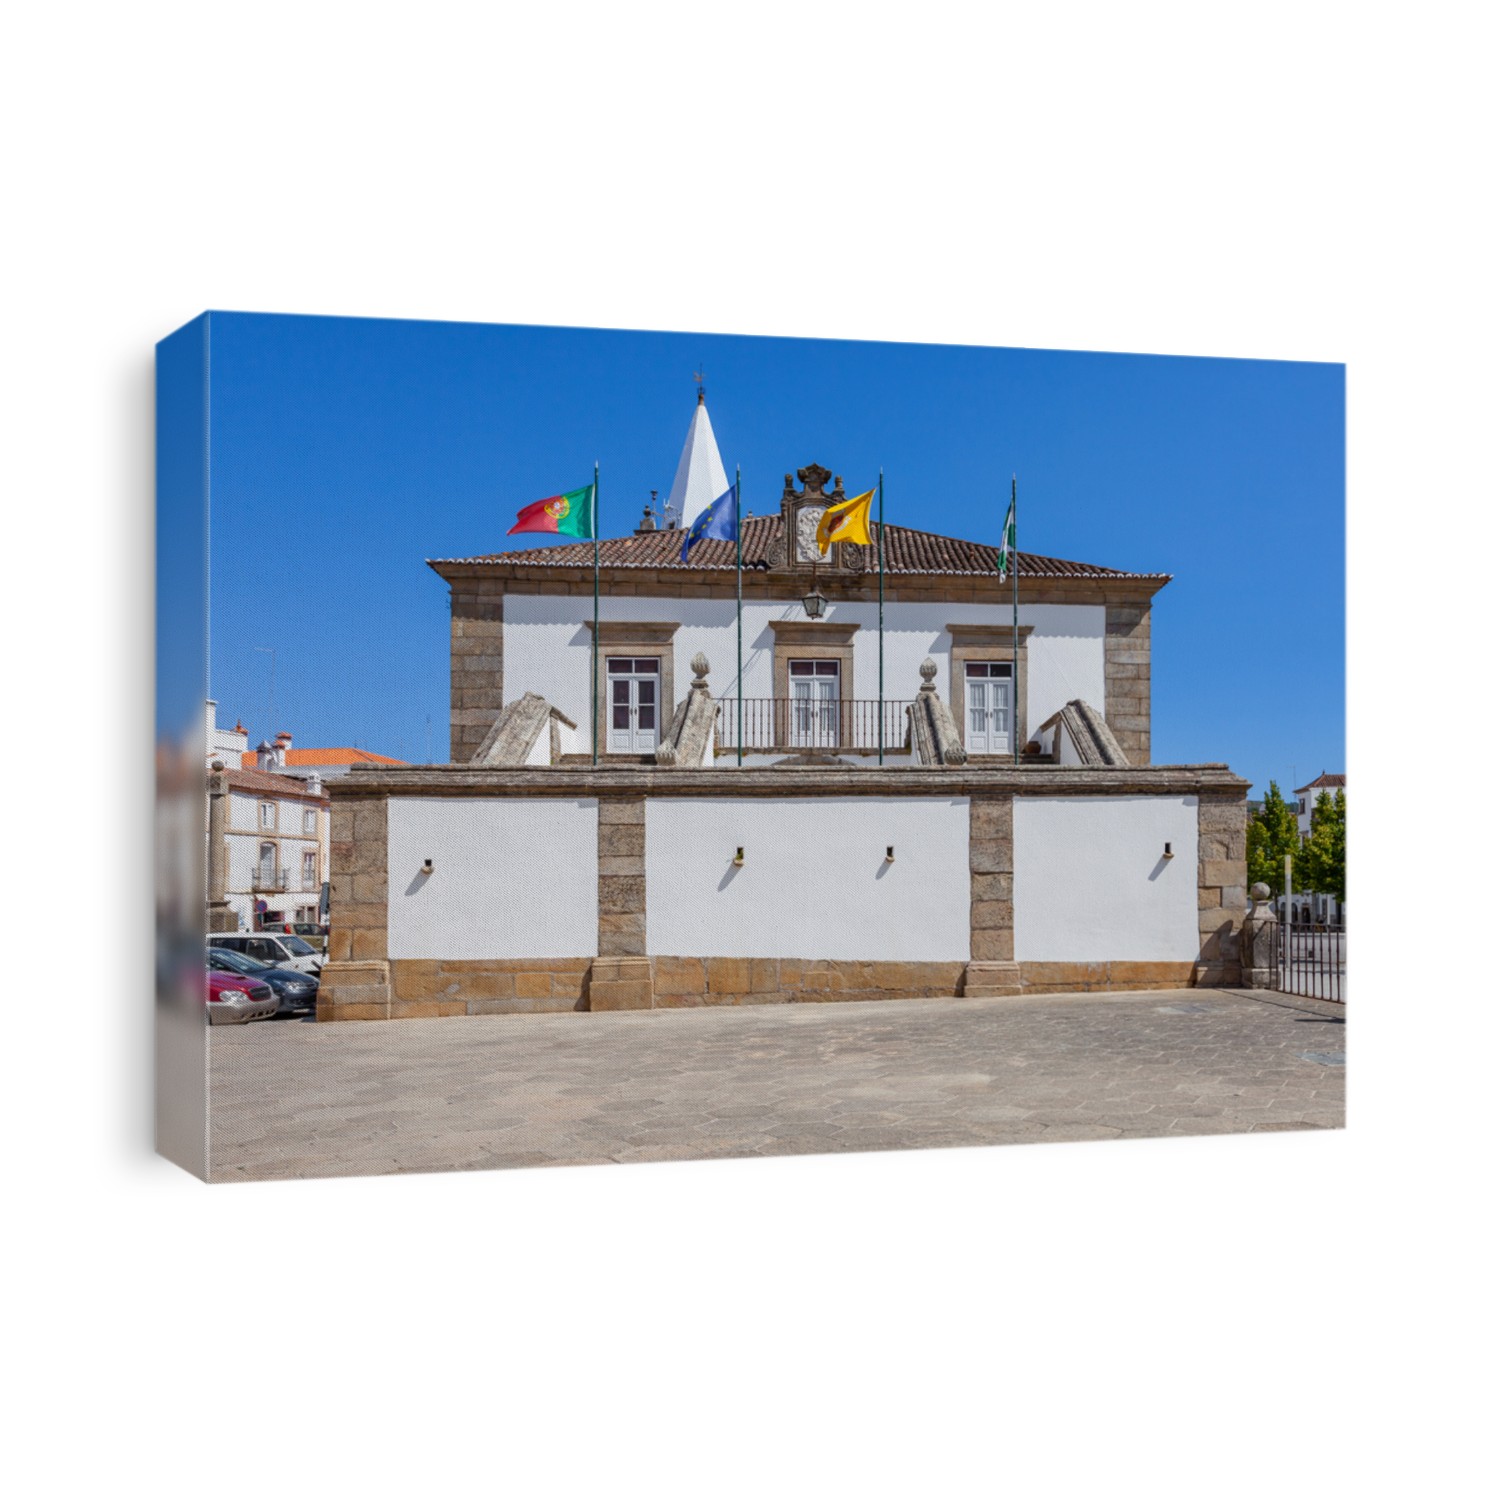 City-Hall building of Castelo de Vide. Alto Alentejo, Portugal